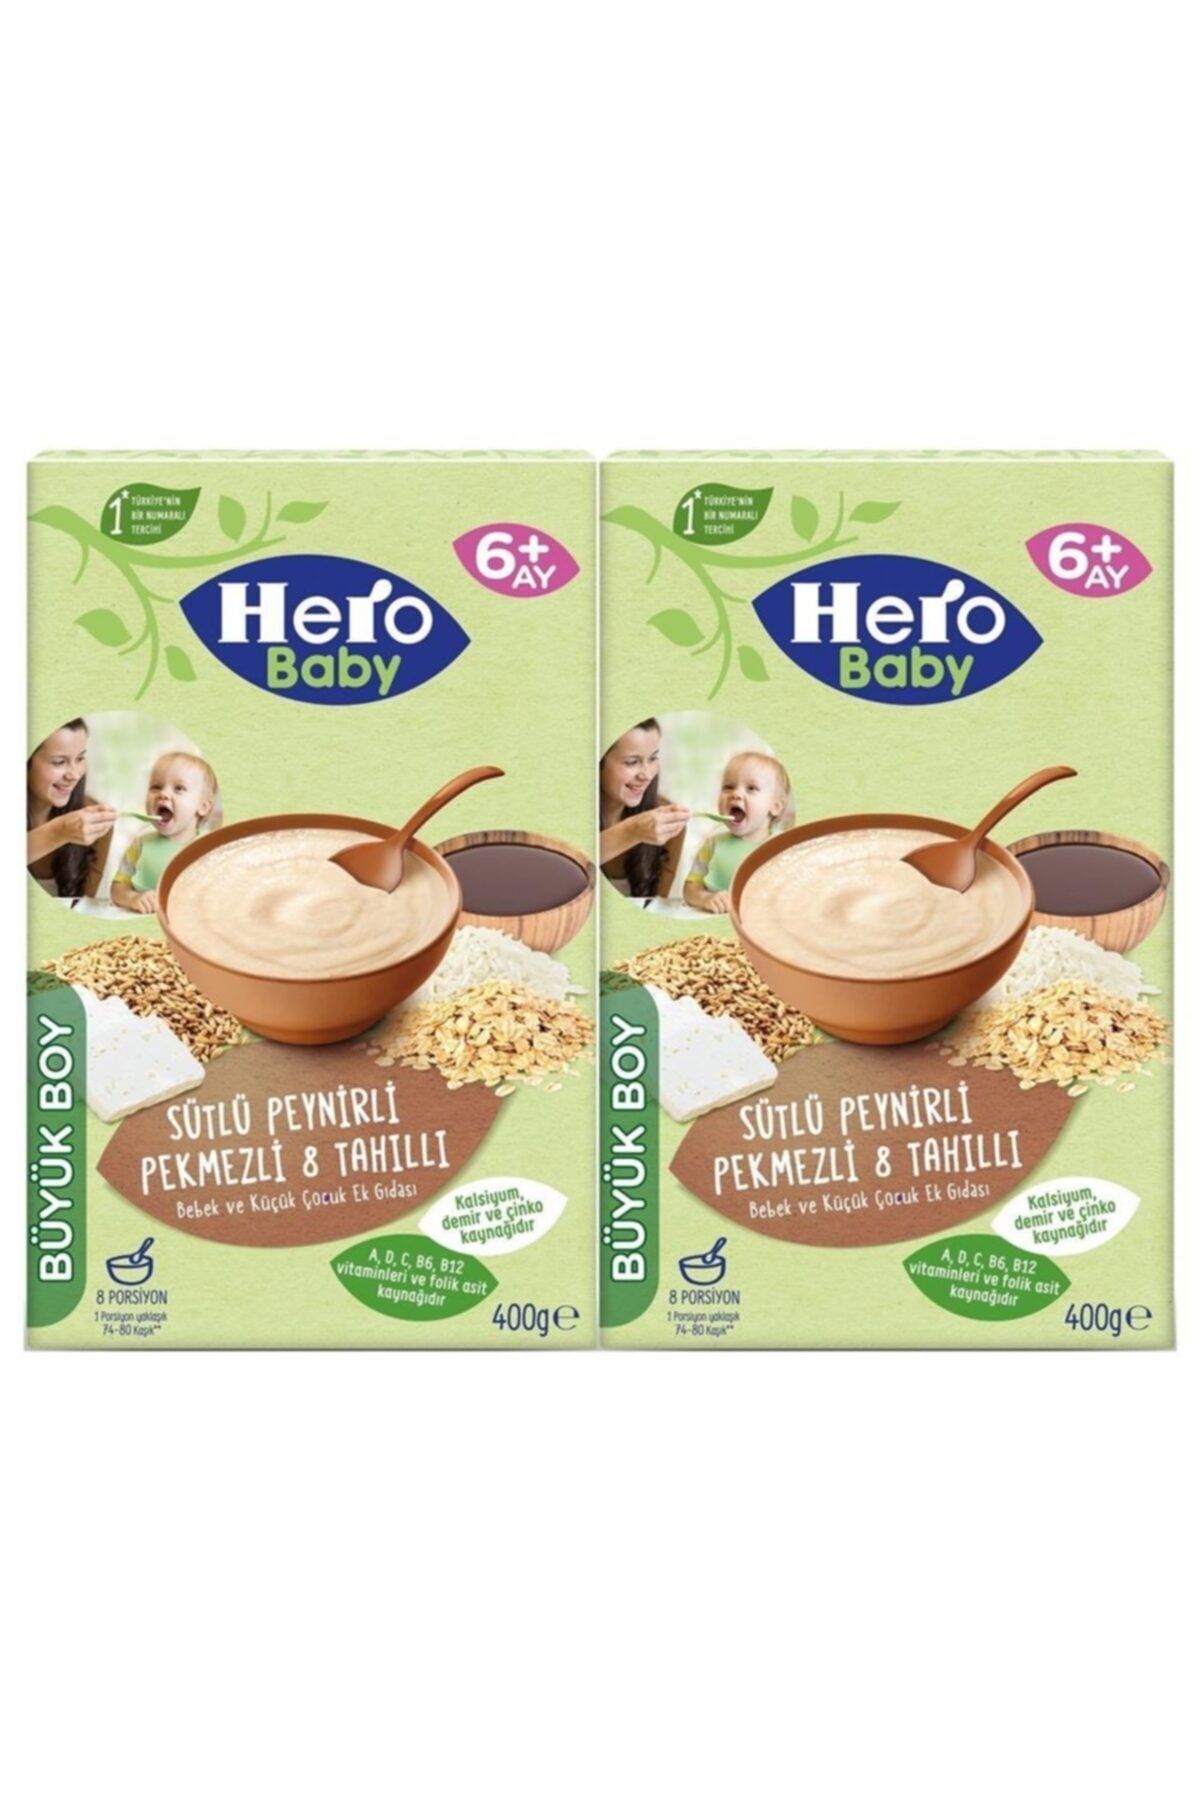 Hero Baby Sütlü Peynirli Pekmezli 8 Tahıllı Kaşık Maması 400grx 2 Adet